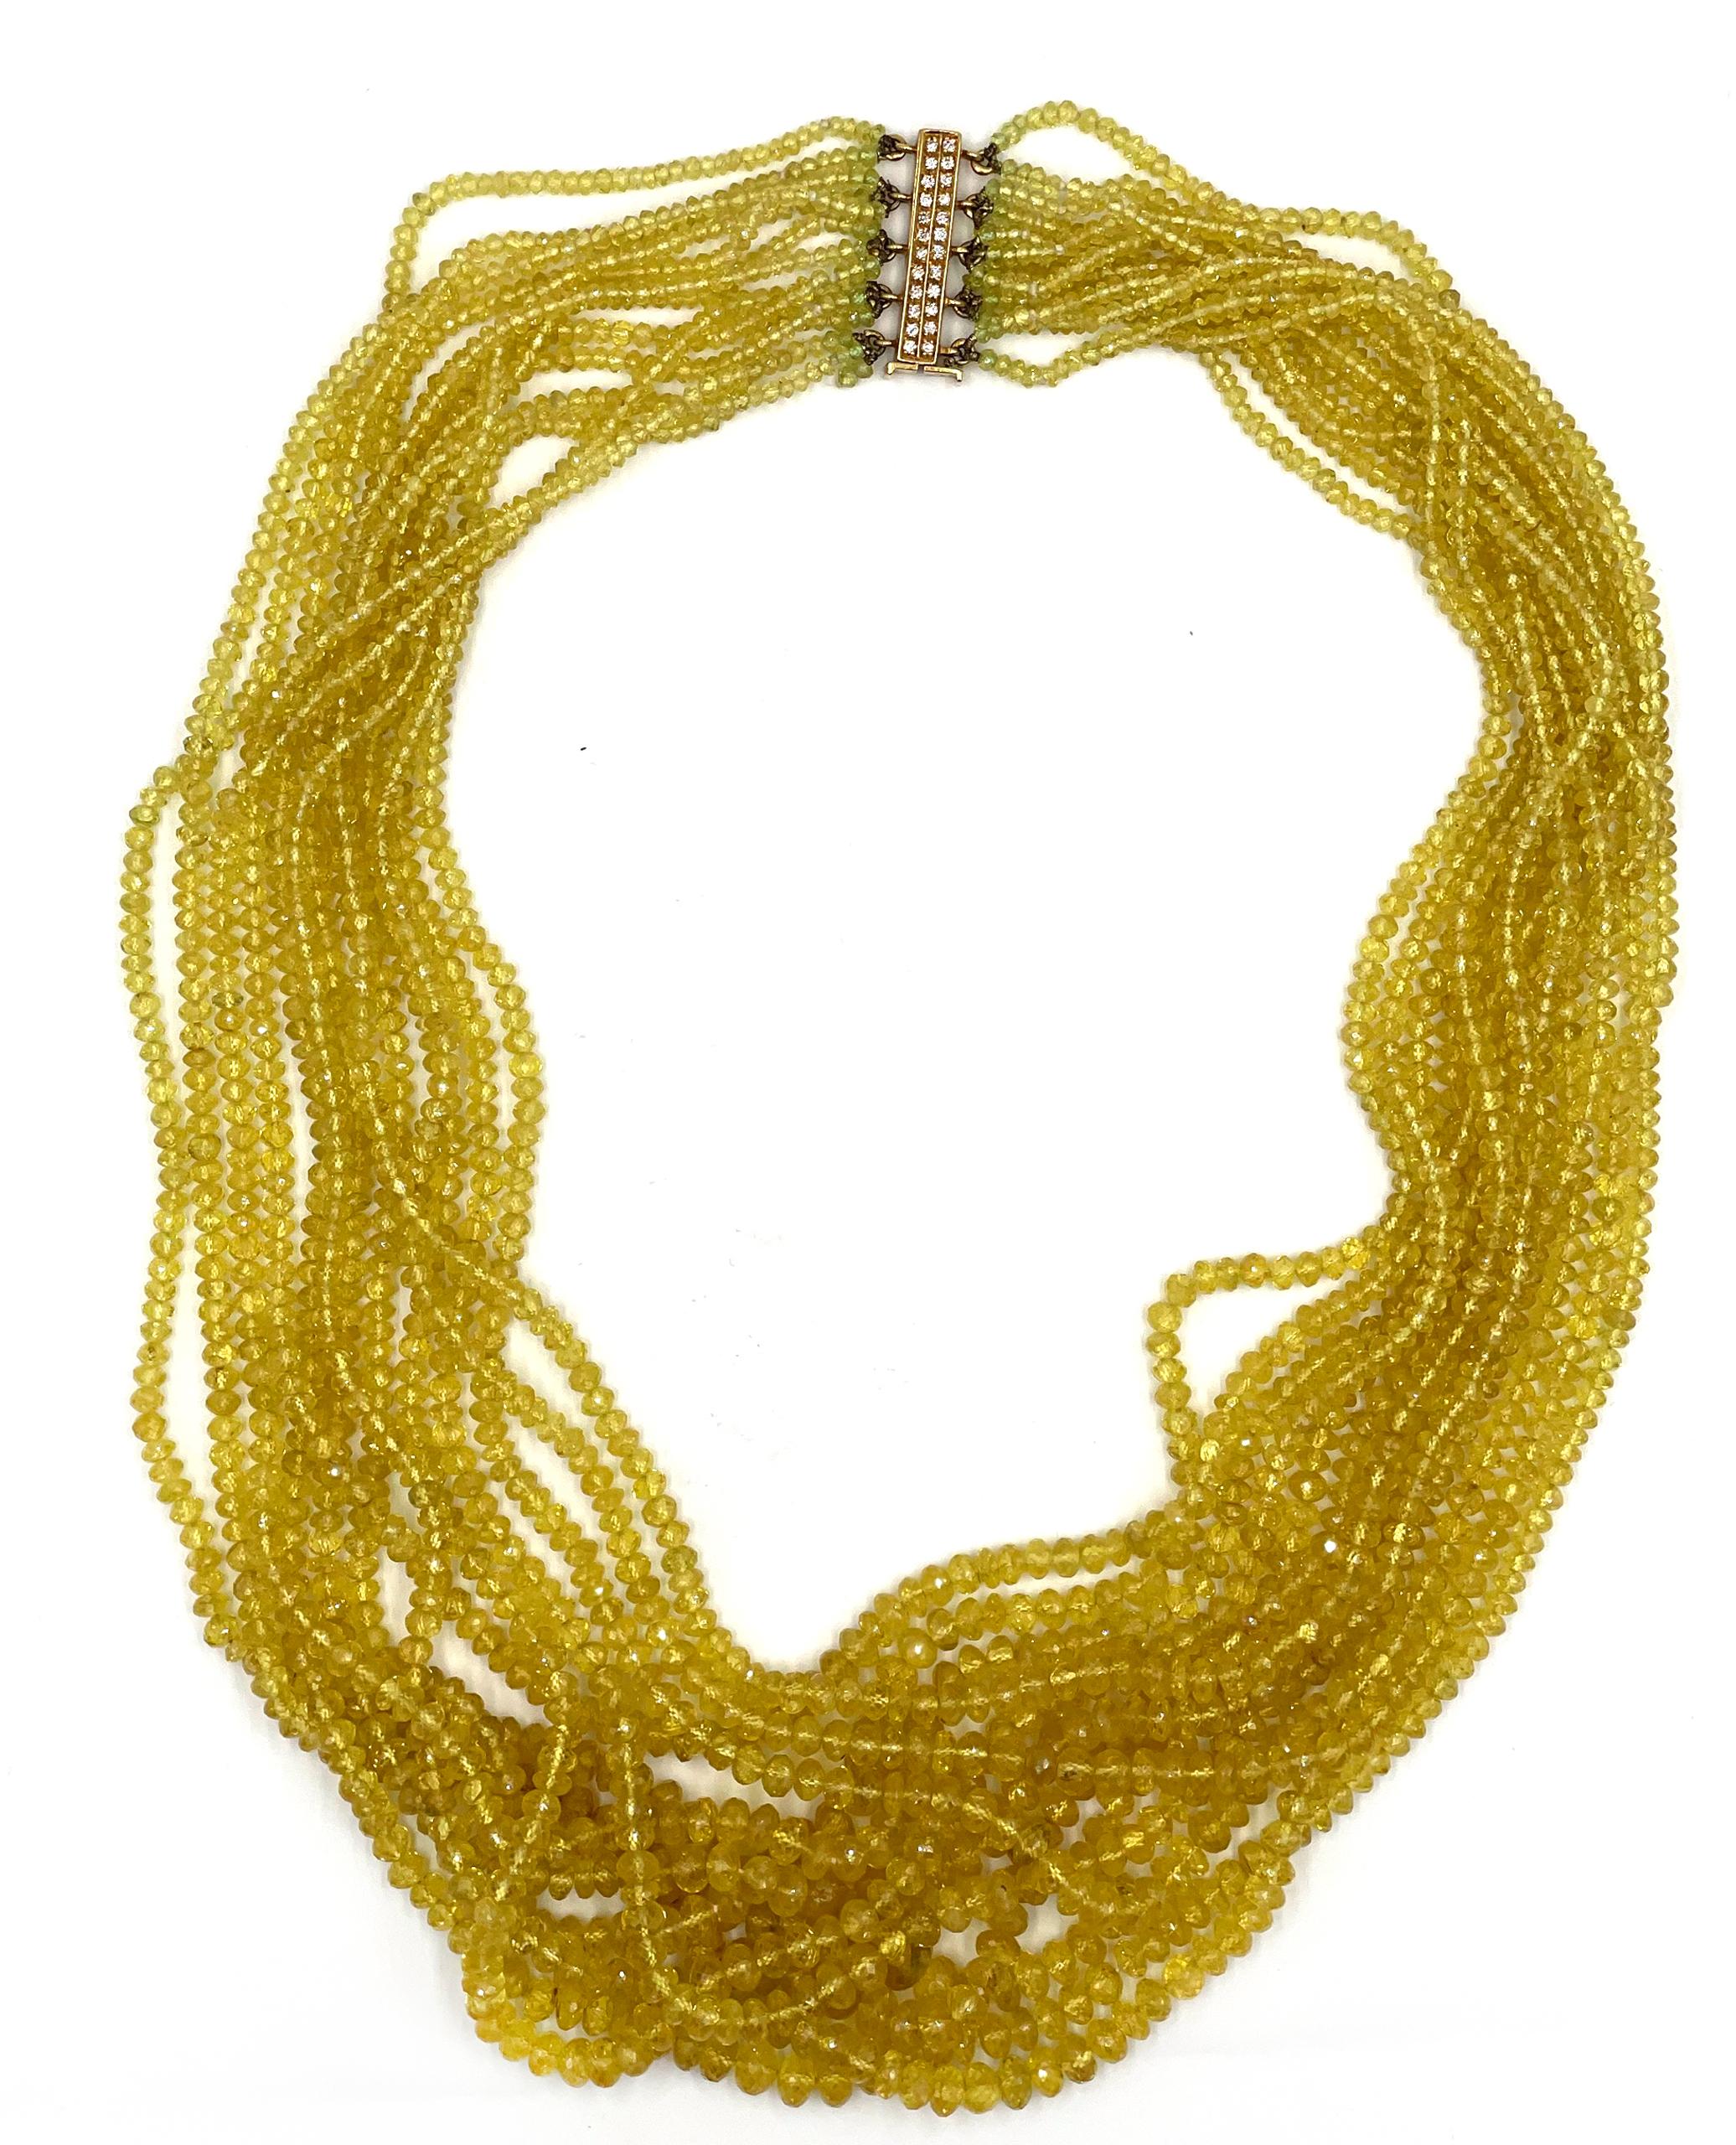 Pre-Owned Vintage Estate Multi-Strand goldenen Saphir Halskette mit einem 18K Gelbgold und Diamant-Verschluss.  Die Halskette besteht aus 14 Strängen mit facettierten gelben Saphiren und ist in der Länge von 20 bis 25 Zoll abgestuft.  Die gelben